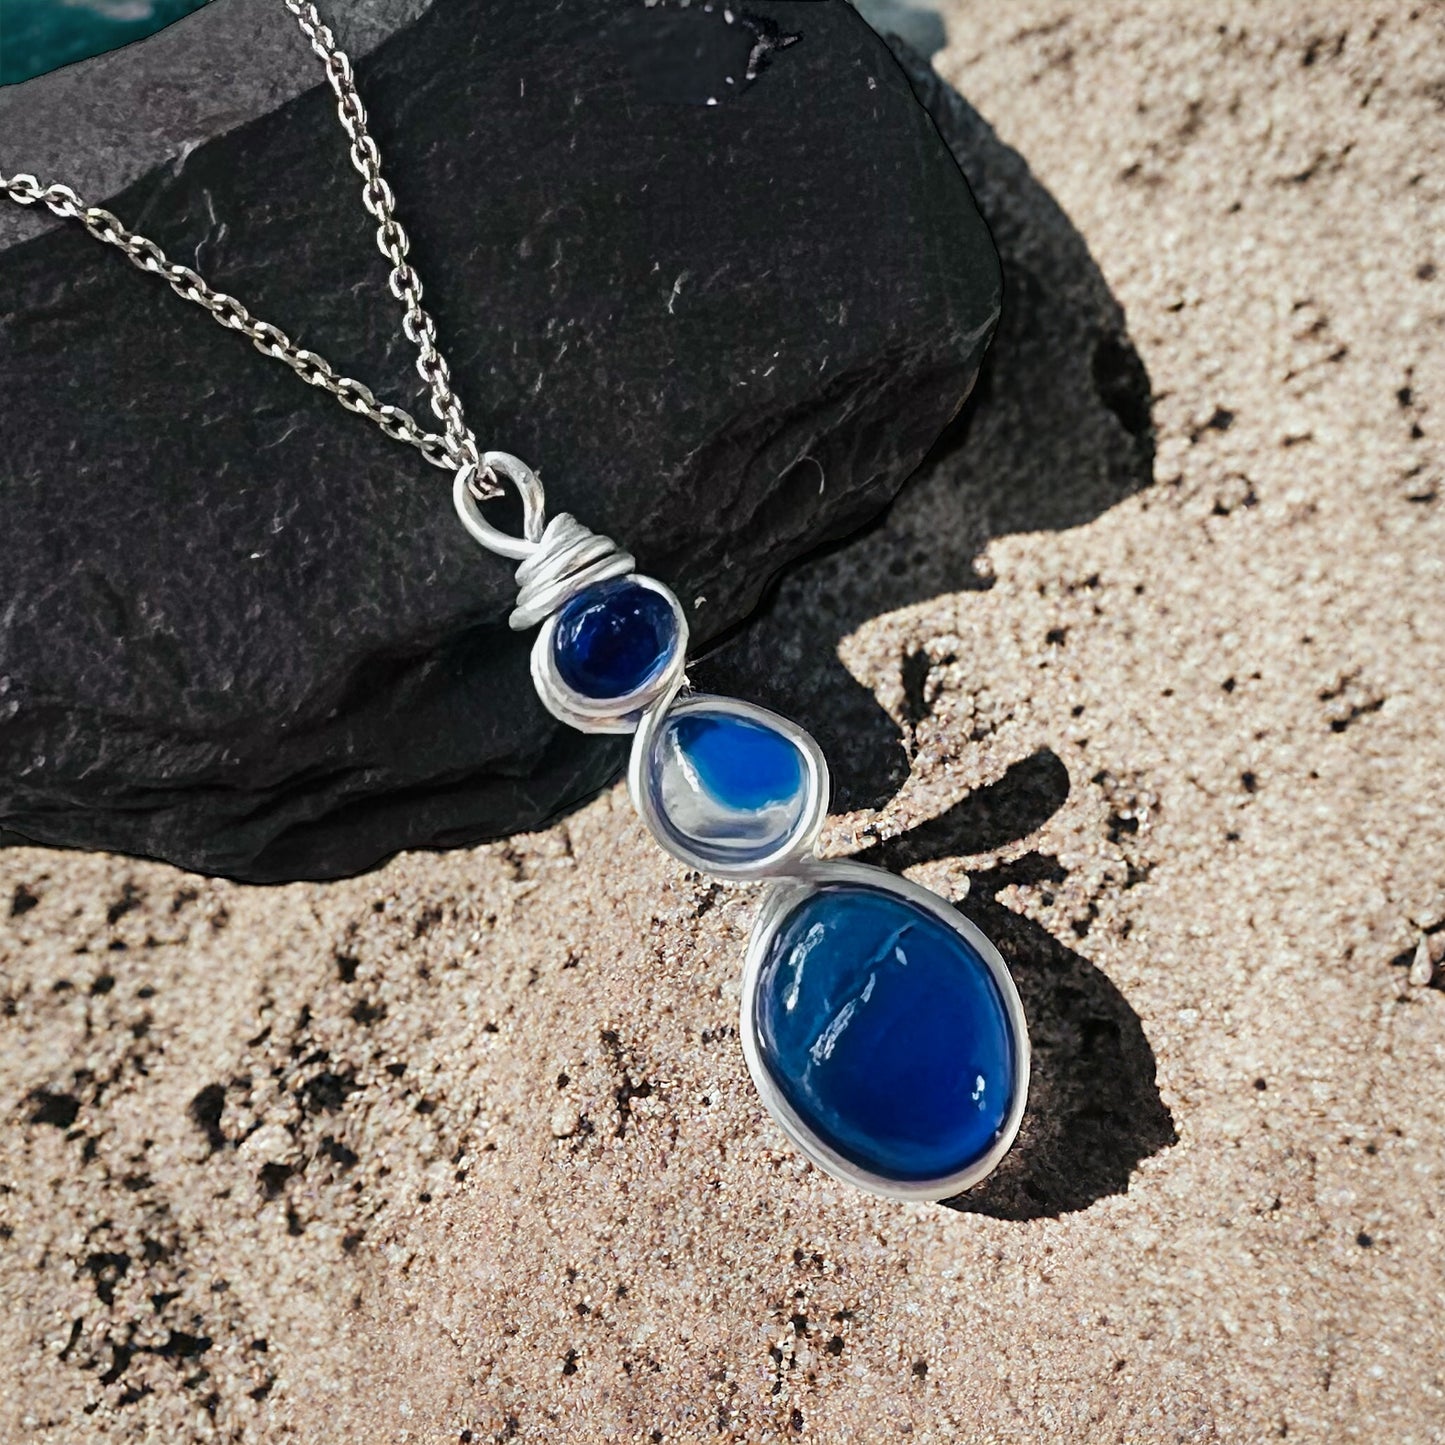 Blue Seaham Sea Glass Pendant